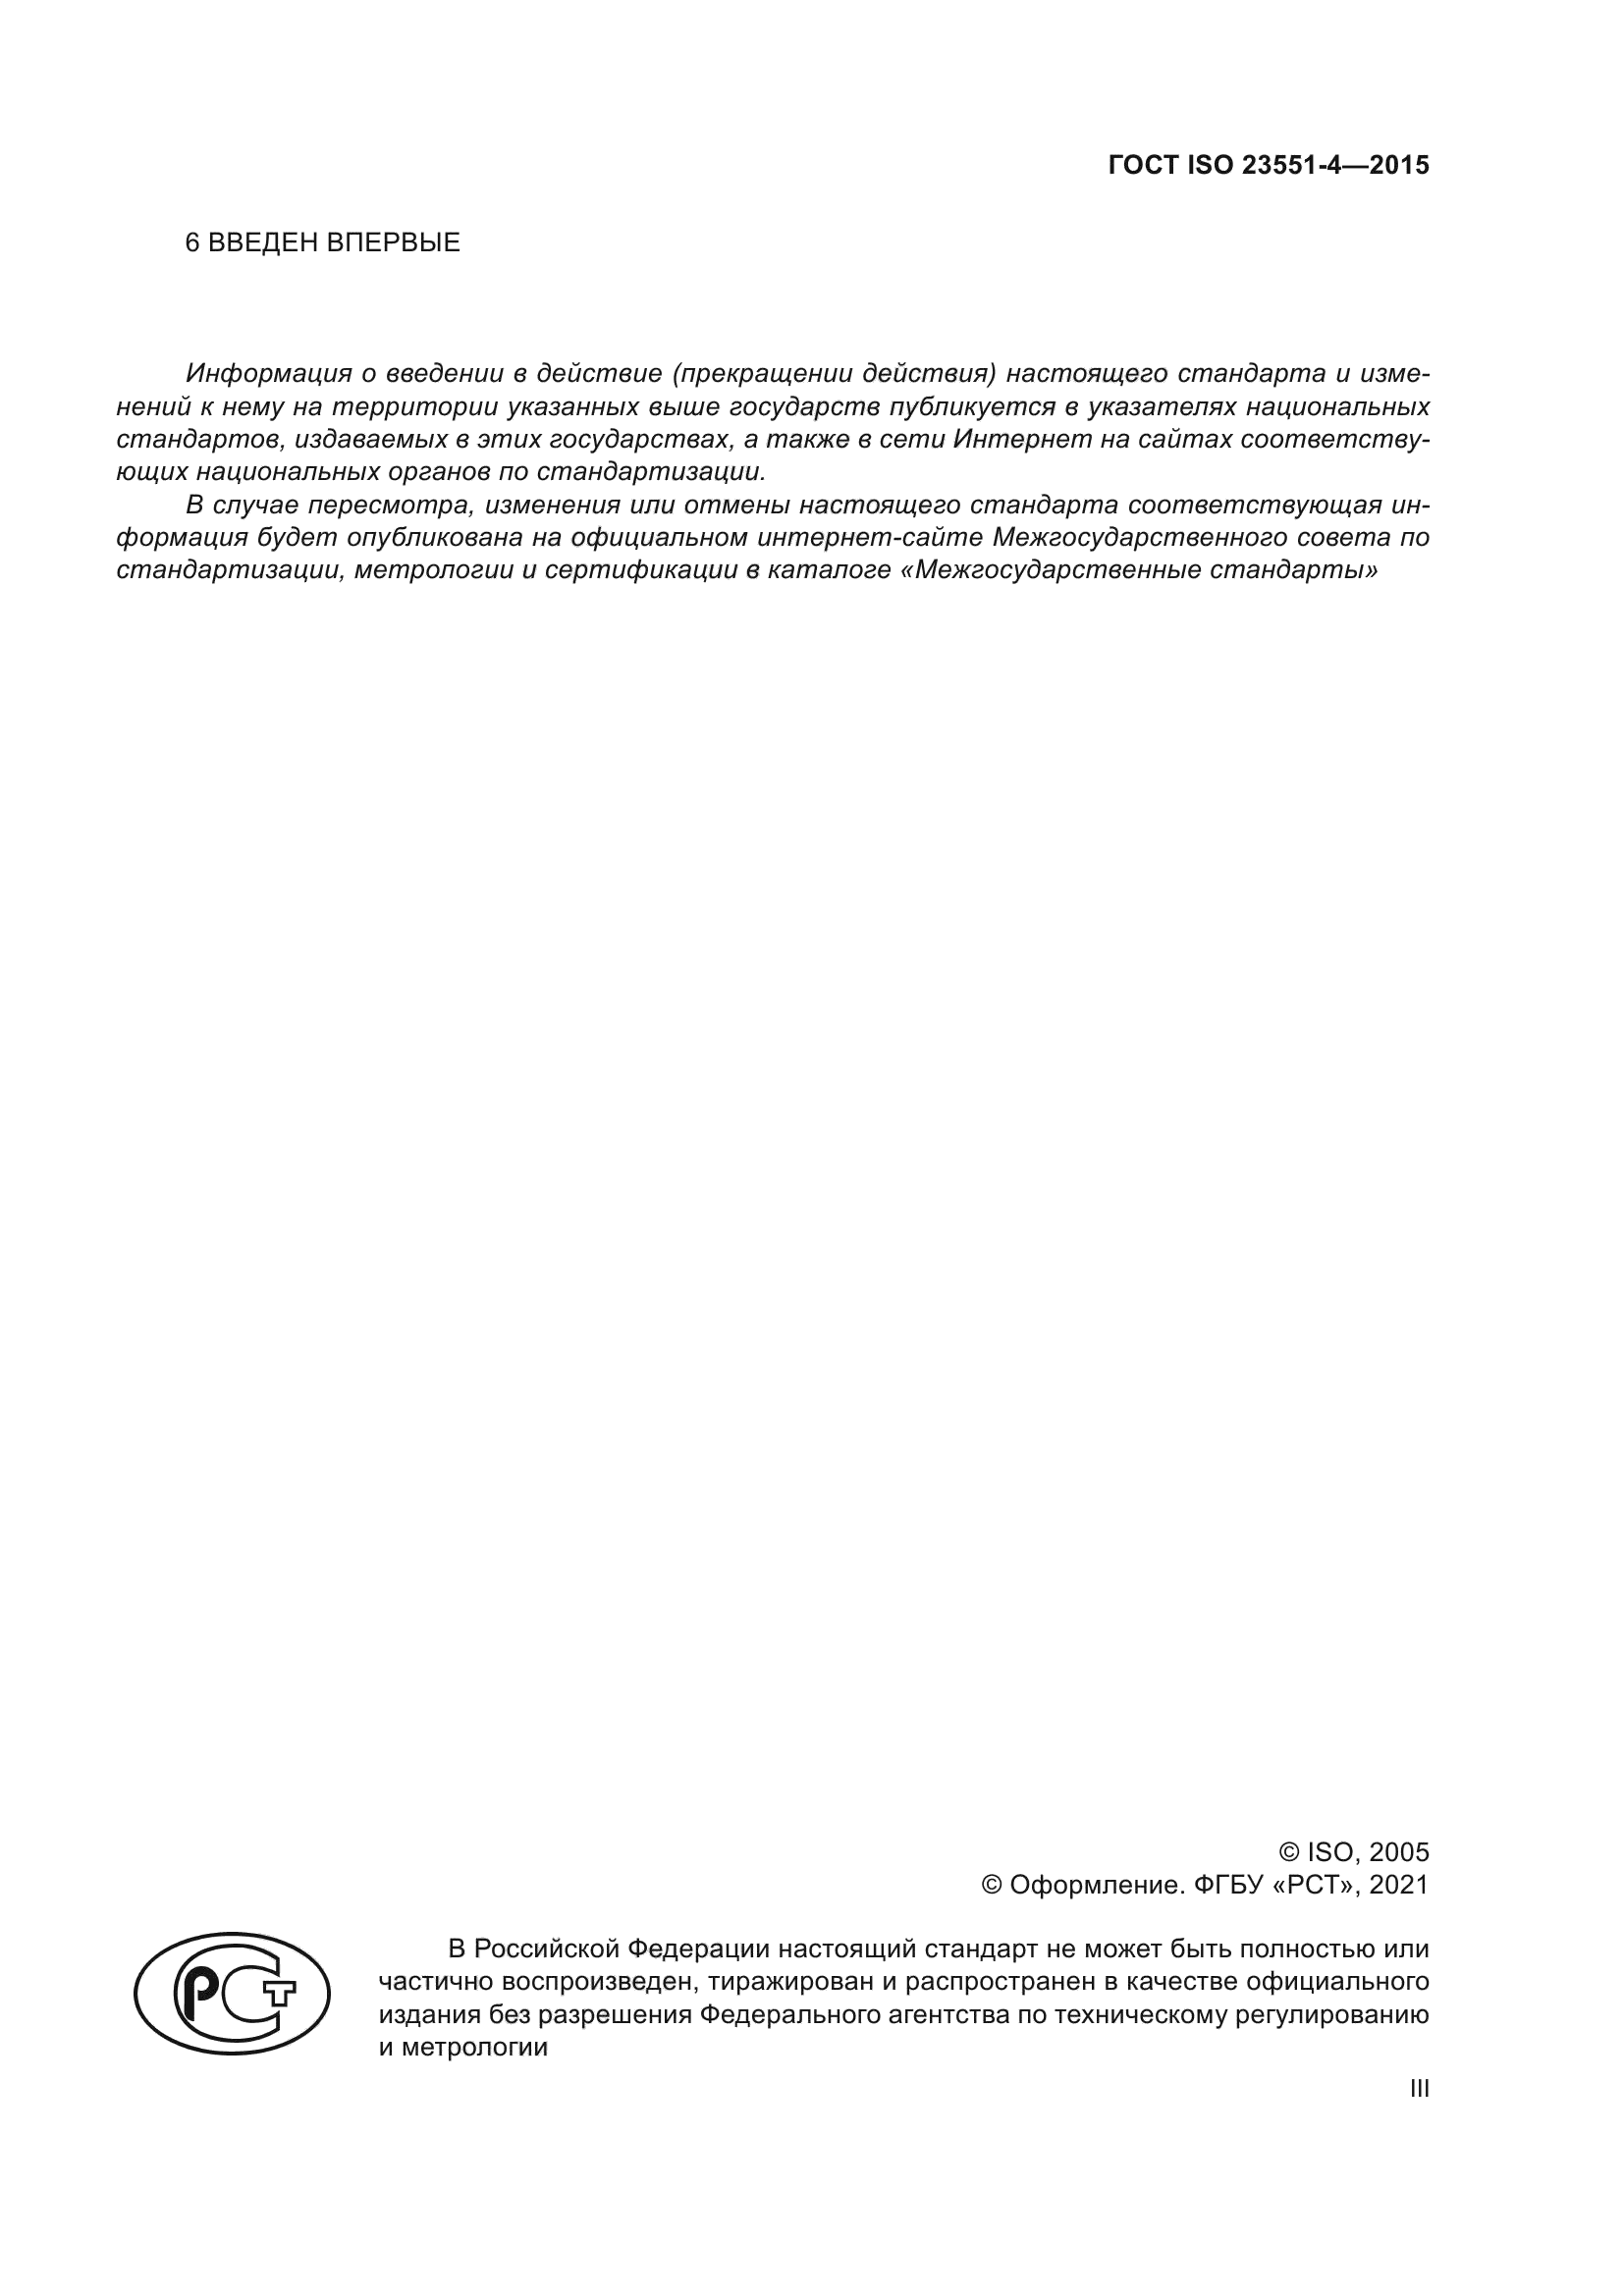 ГОСТ ISO 23551-4-2015